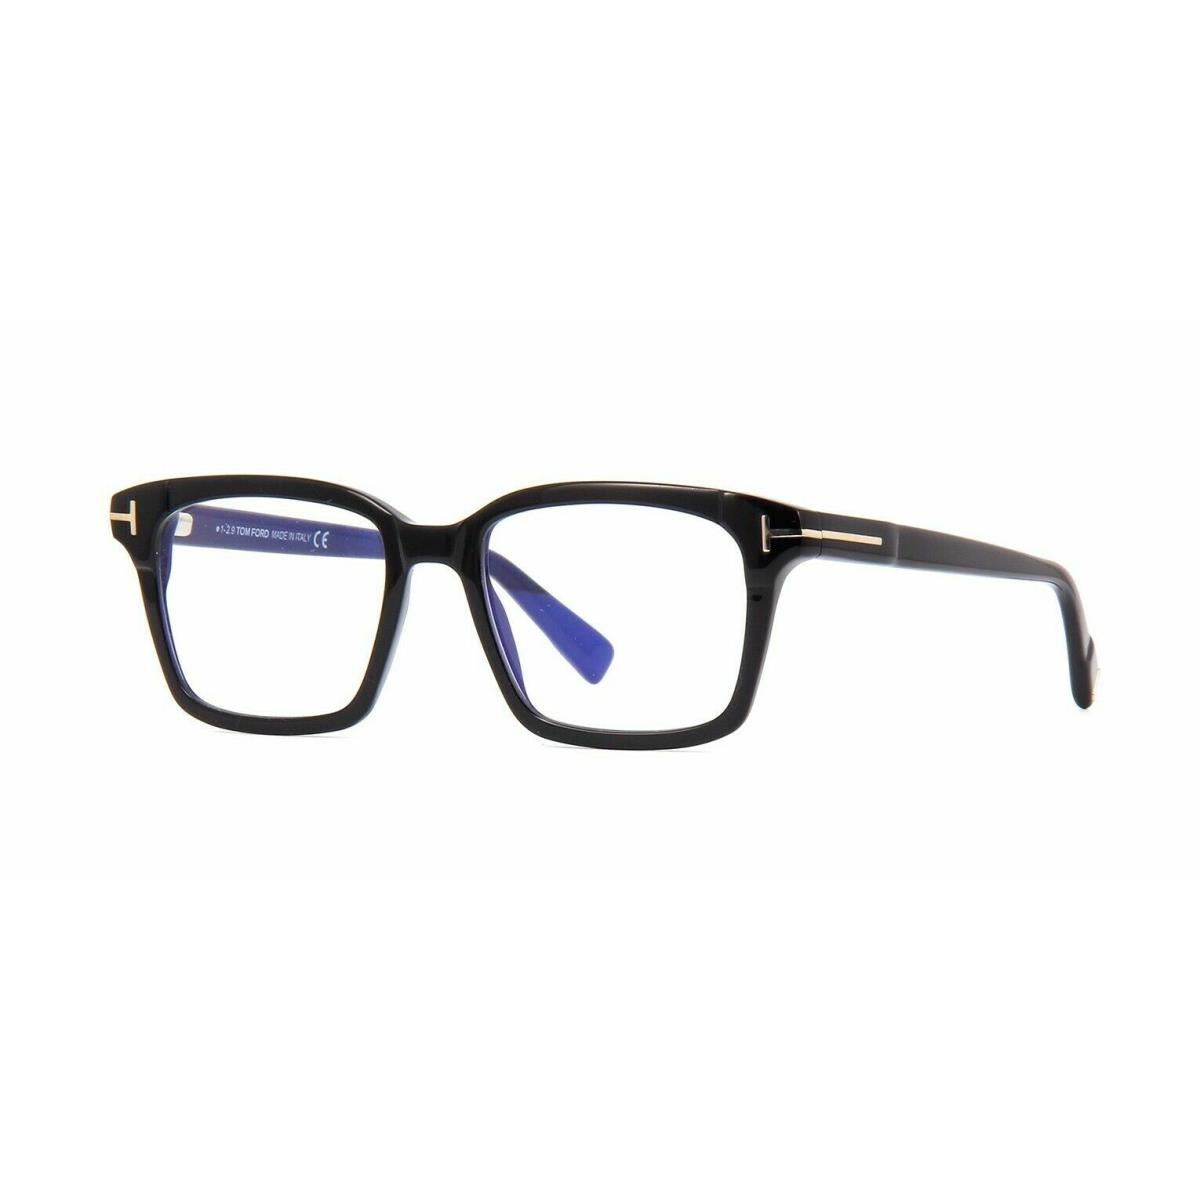 Tom Ford FT5661 001 Shiny Black Optical Frame Eyeglasses 51mm Italy